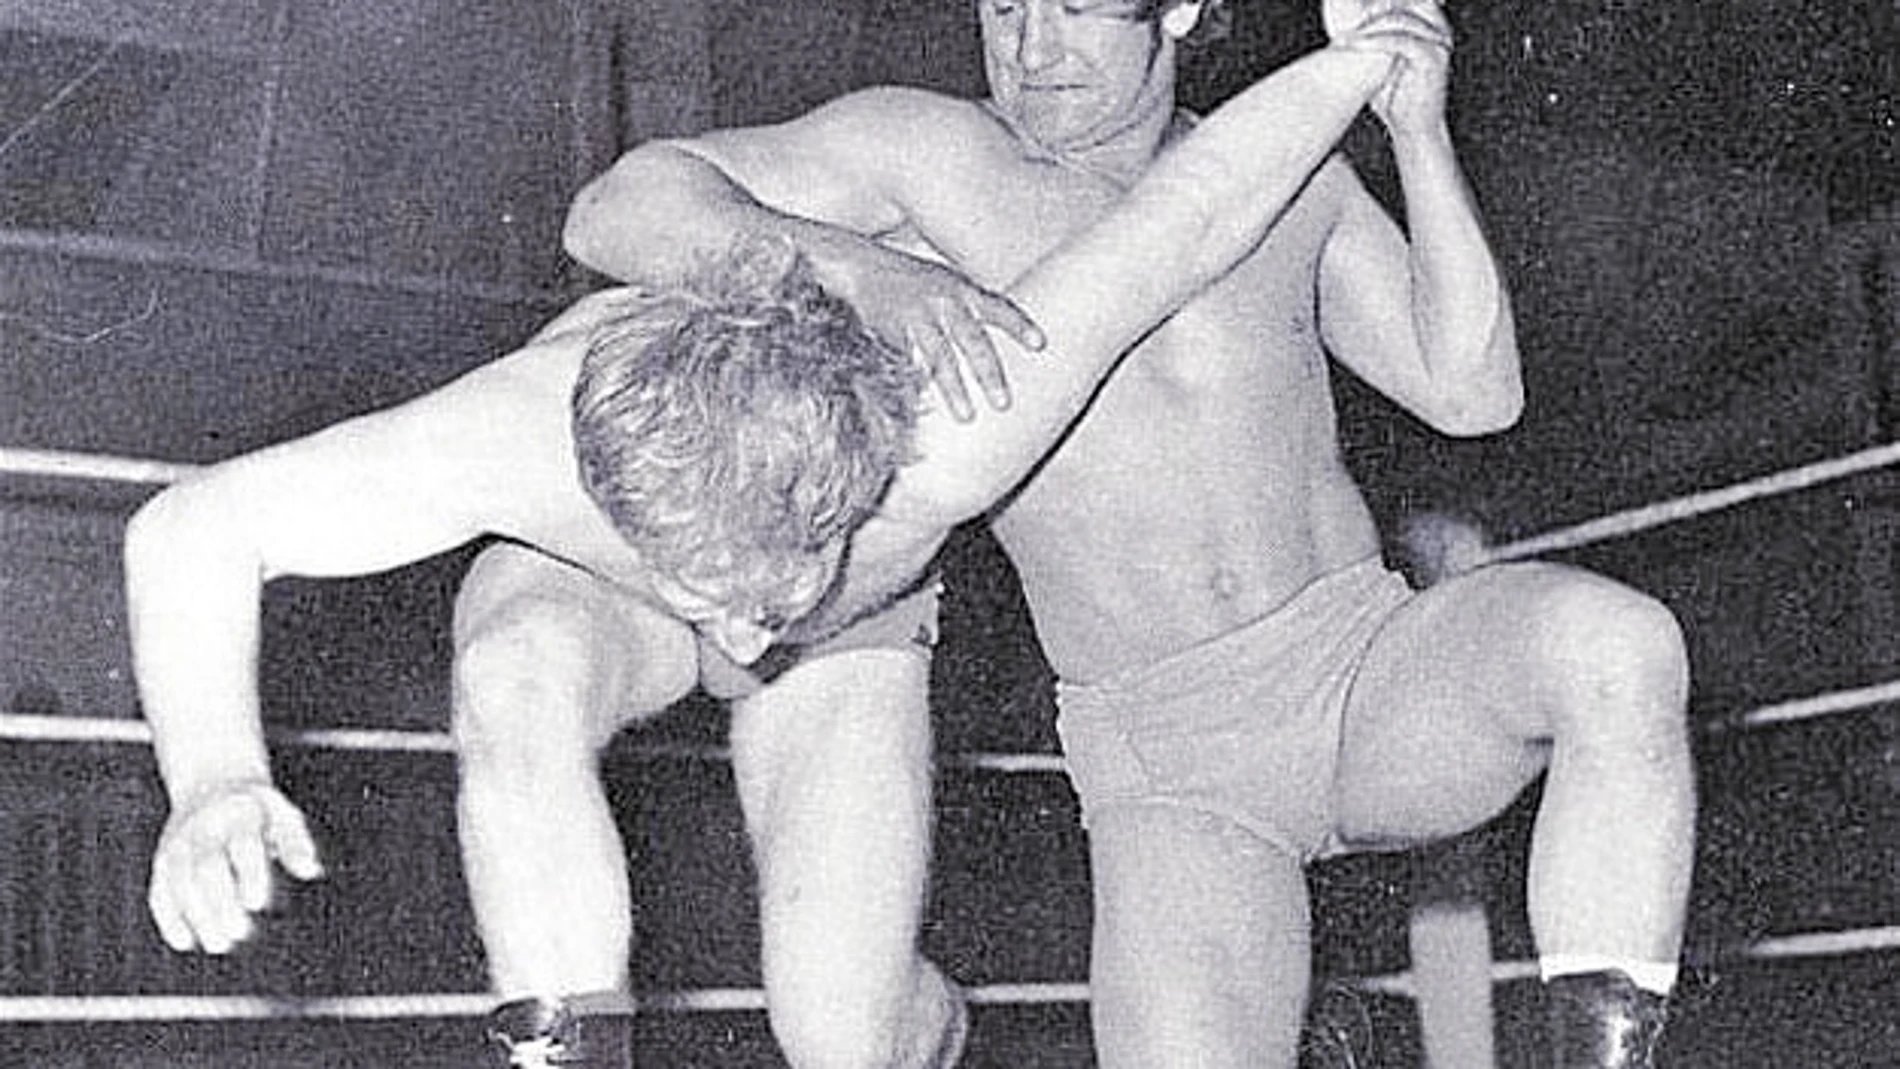 Breaks fue varias veces campeón de la British Westling, el campeonato de lucha libre británica